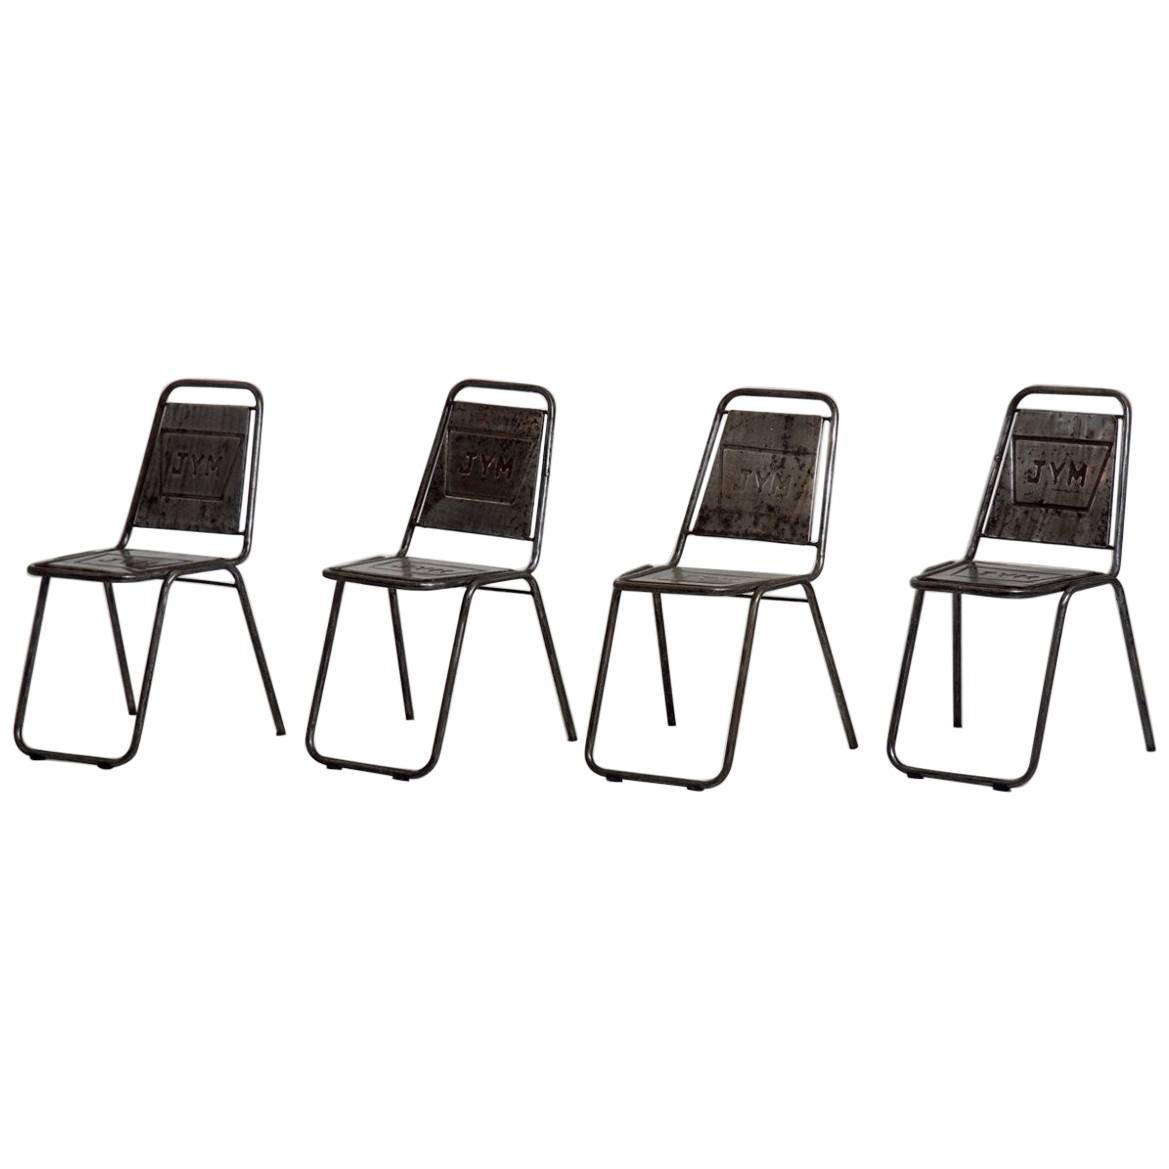 Quatre chaises de café françaises du début du 20e siècle